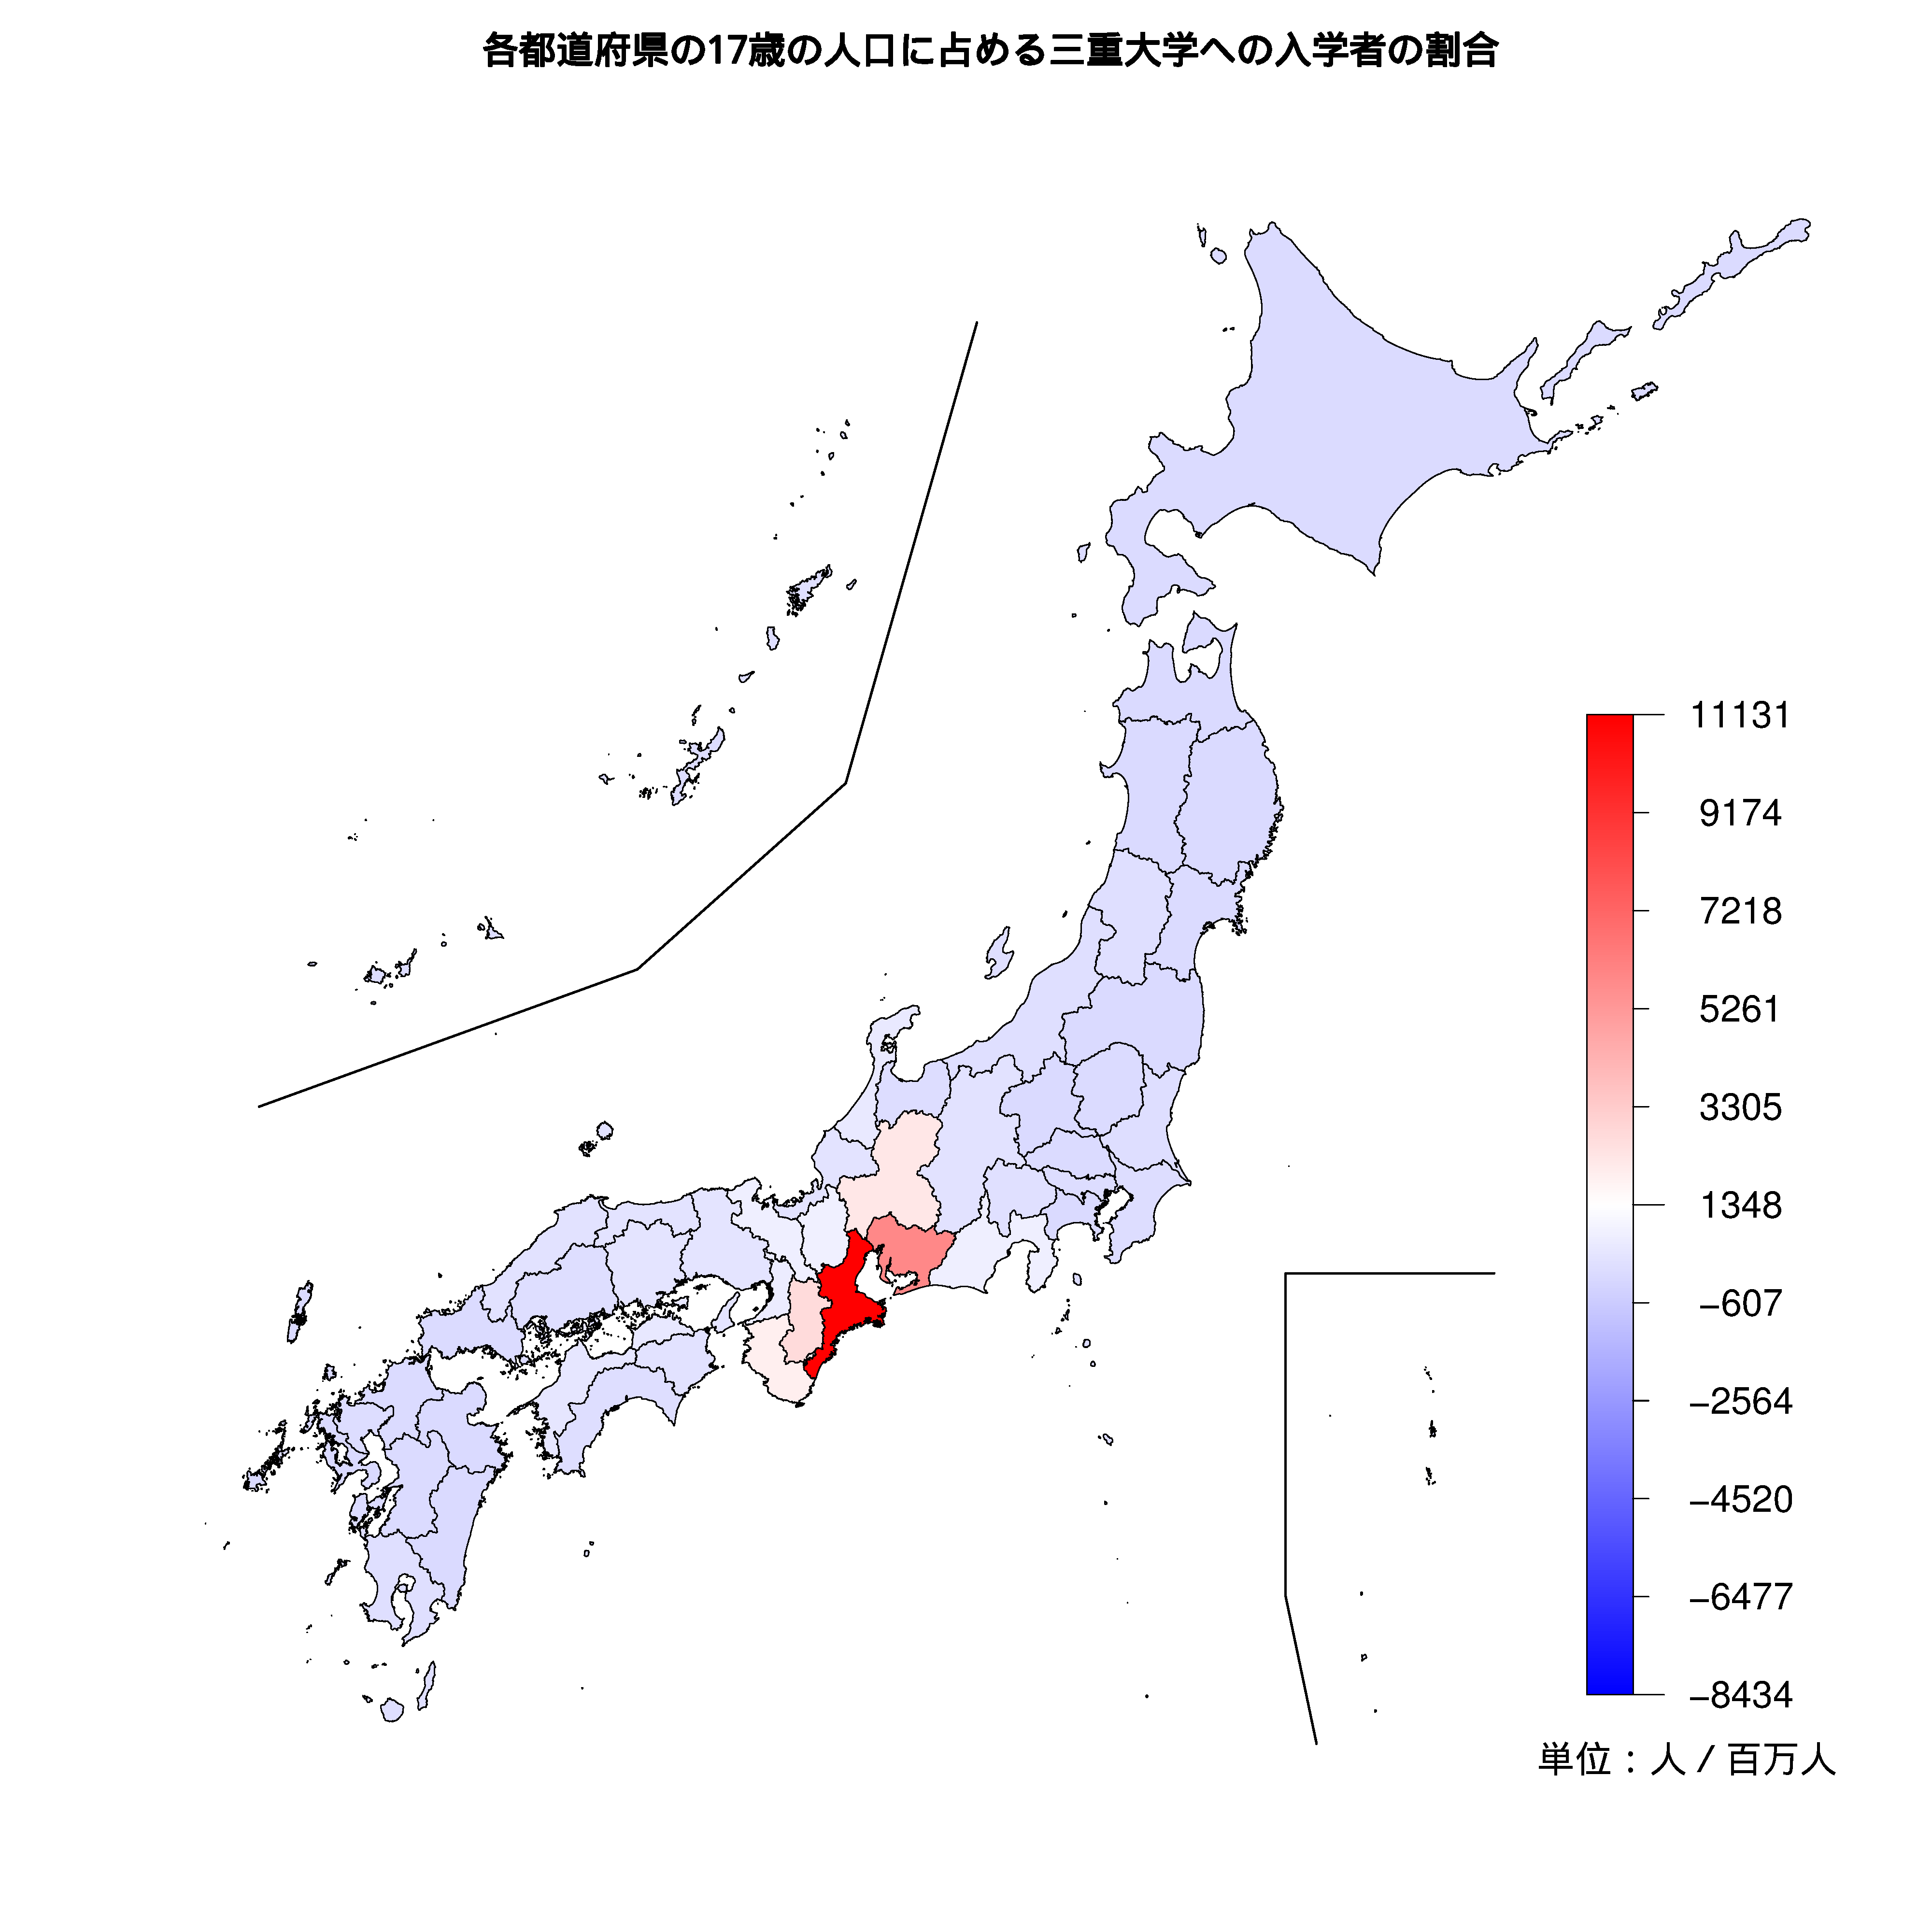 三重大学への入学者が多い都道府県の色分け地図